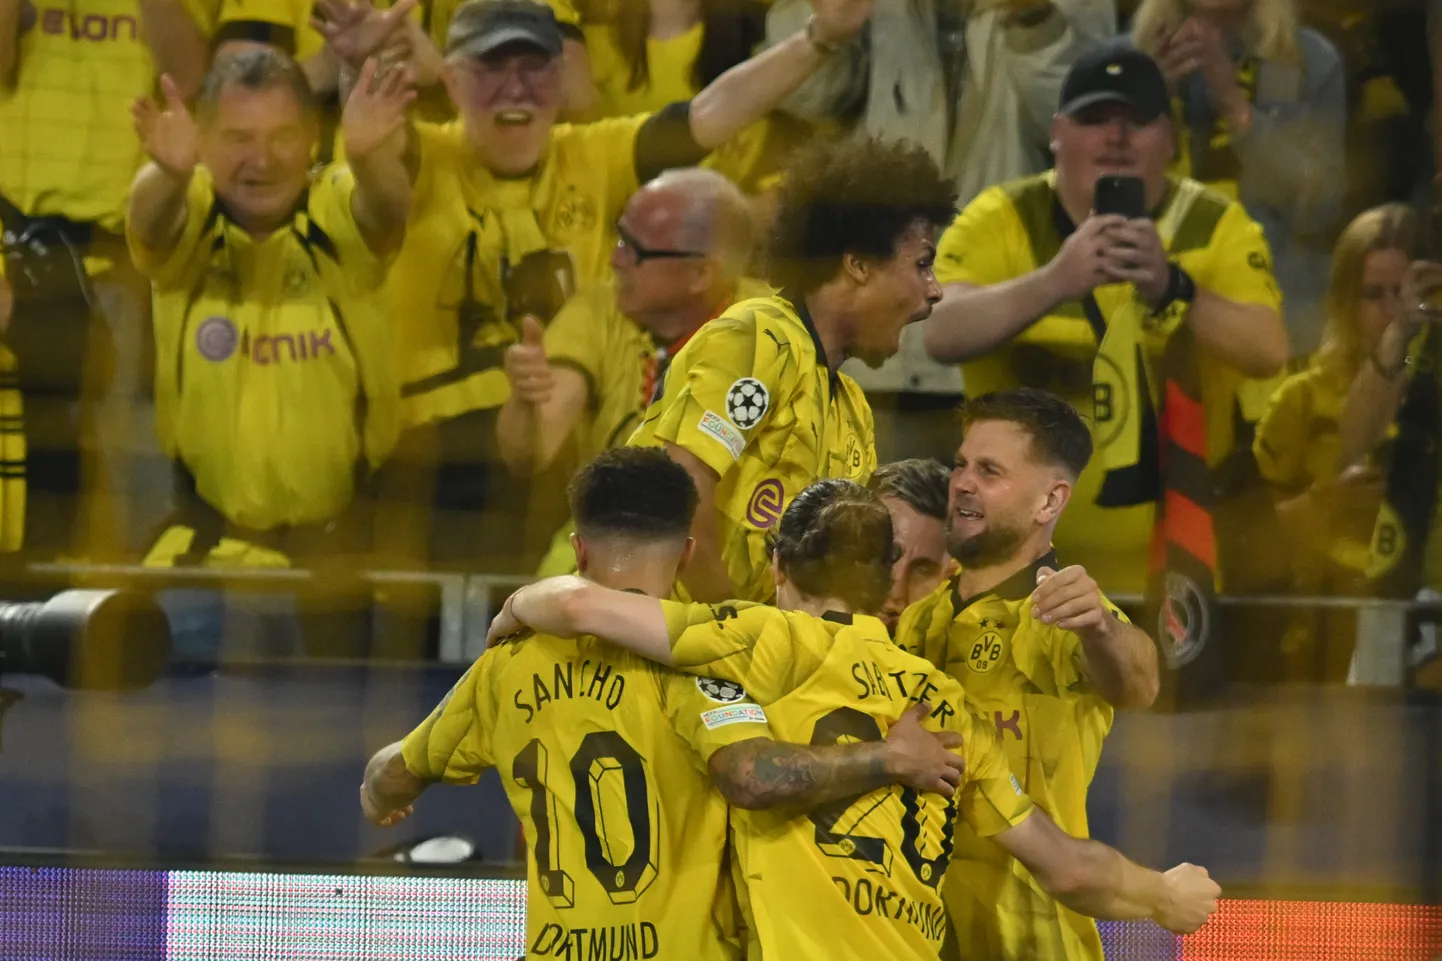 Dortmundi Borussia mehed väravat tähistamas.